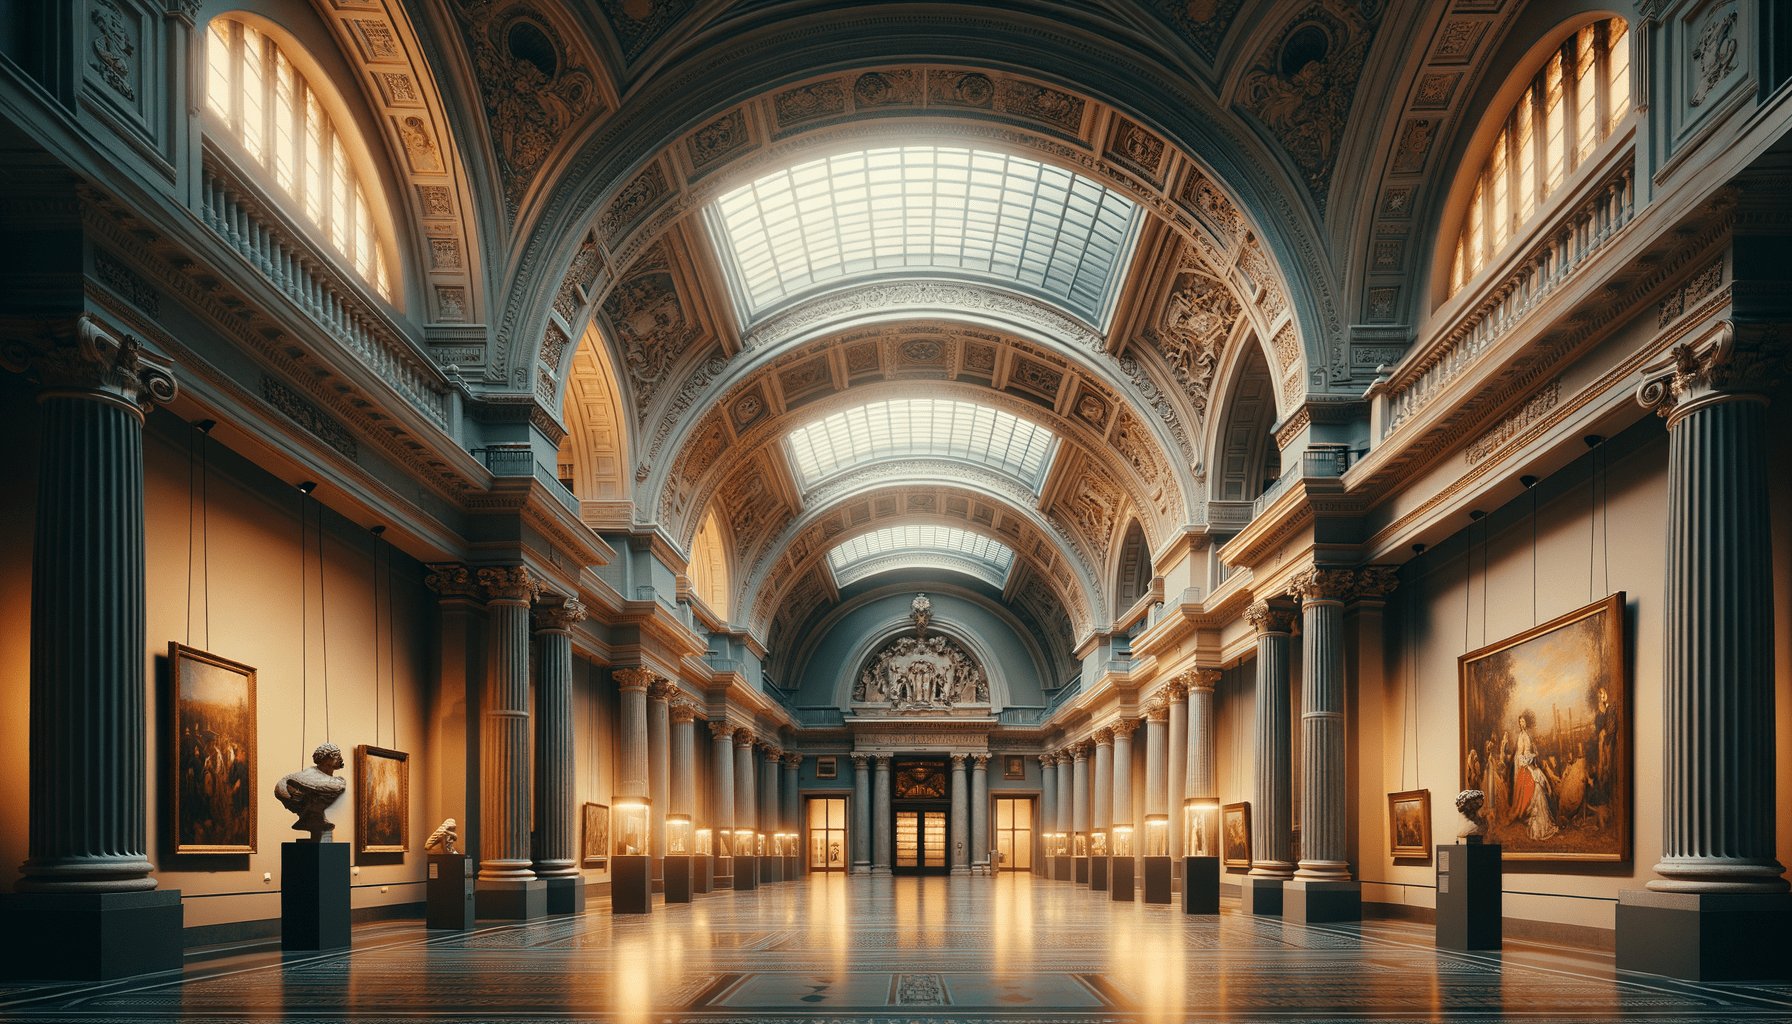 Scopri tutto sul Museo del Prado a Madrid: Storia, Biglietti, Opere, indirizzo e orari